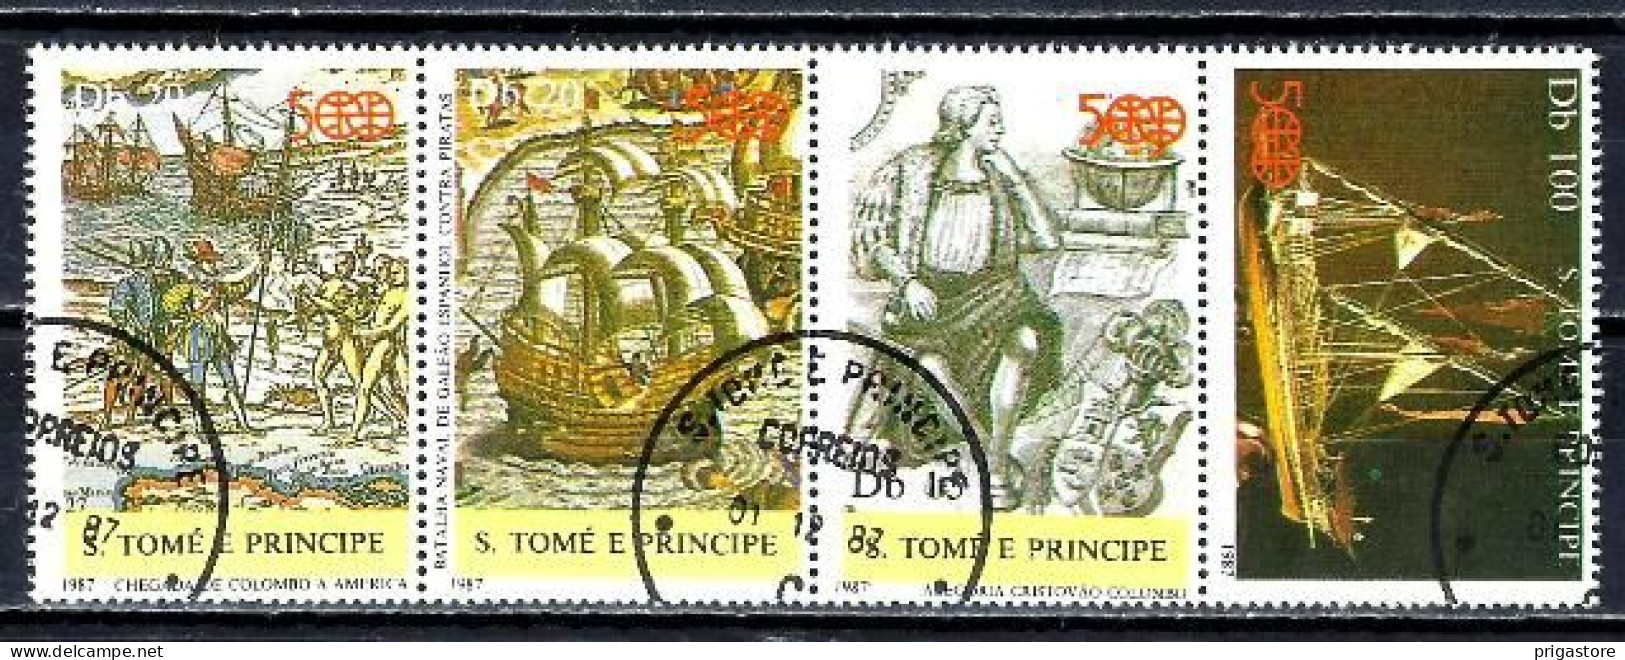 Saint Thomas Et Prince 1987 Bateaux Voiliers (62) Yvert N° 884 à 886 + Timbre Du BF 52 Oblitérés Used - São Tomé Und Príncipe